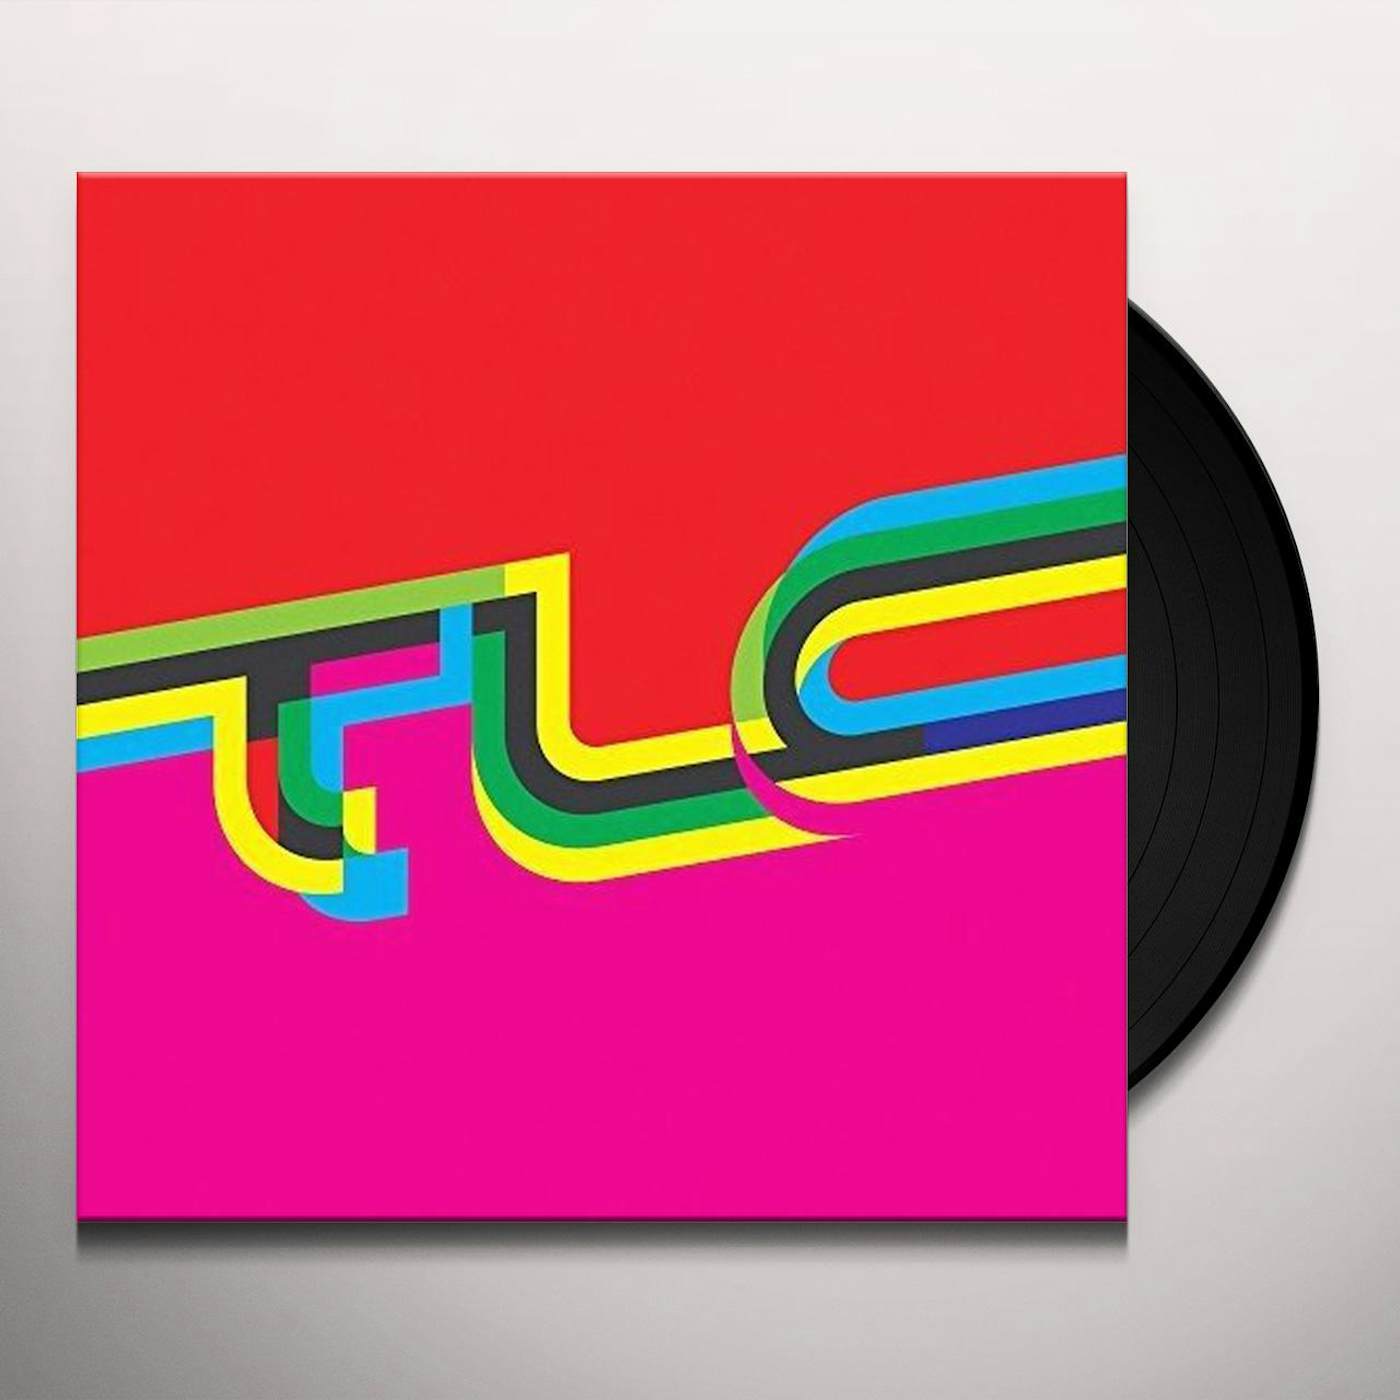 TLC Vinyl Record